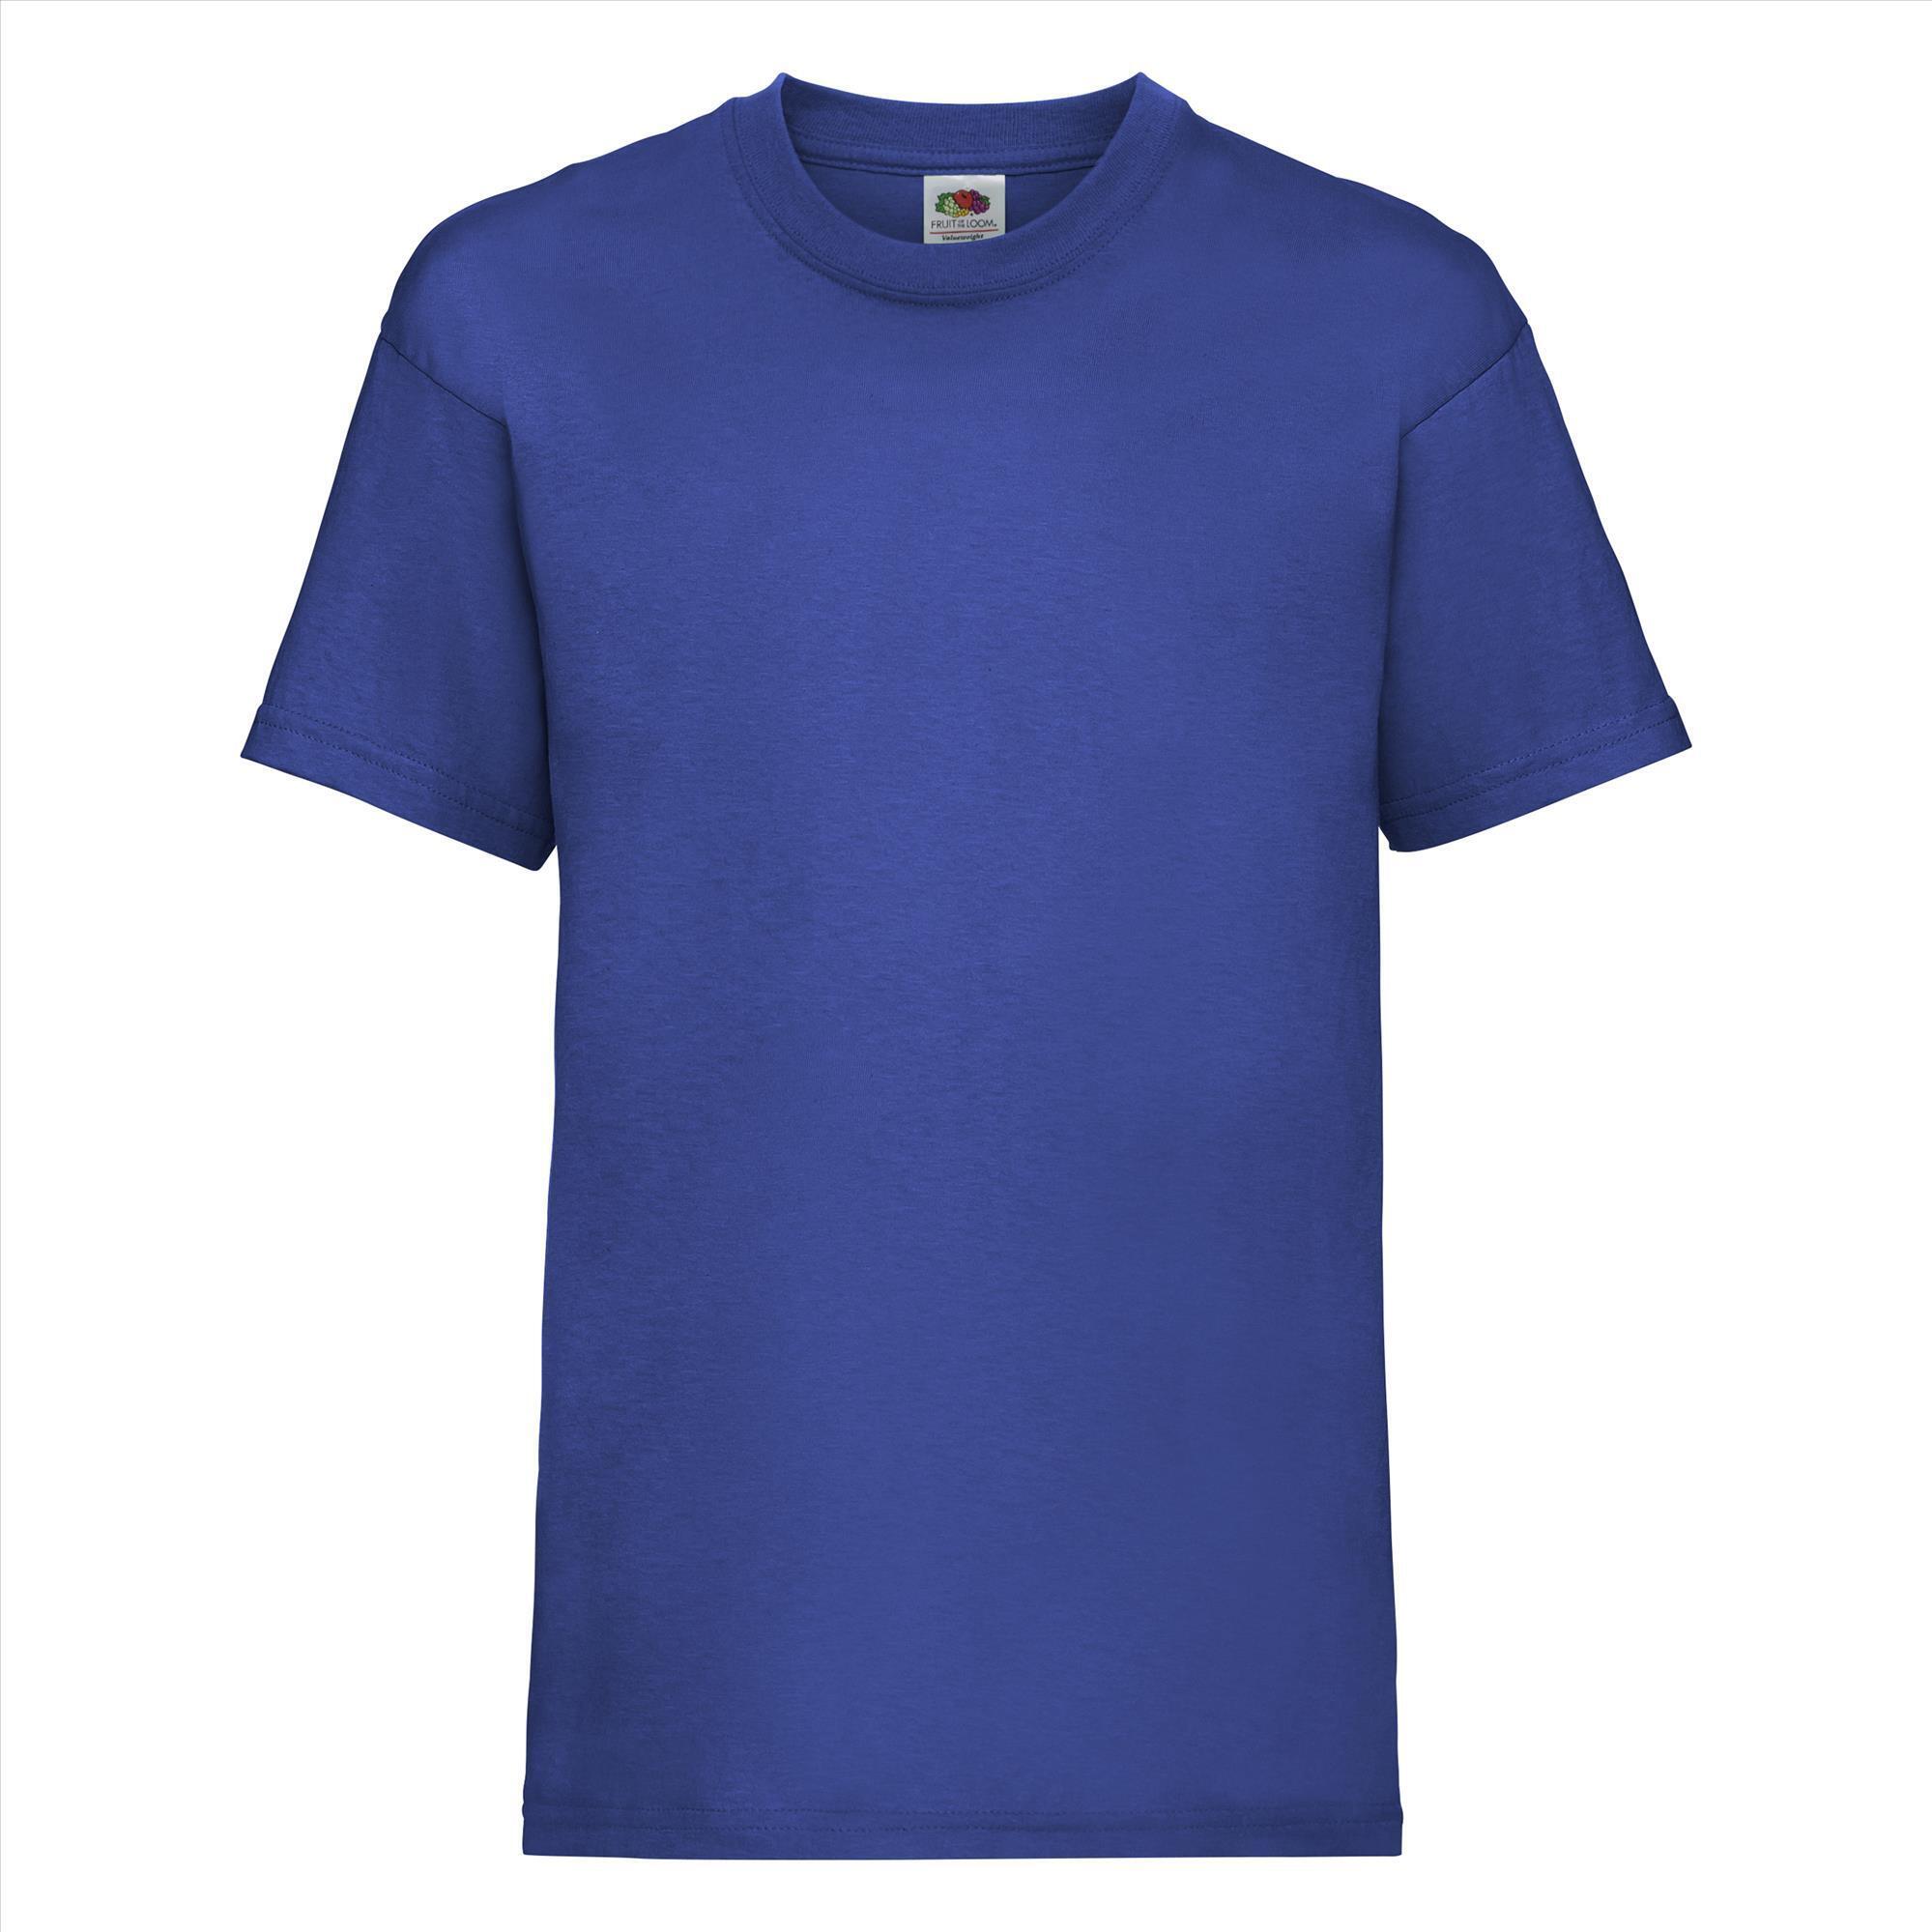 Gepersonaliseerde Kinder T-shirt royal blauw Kinderkleding bedrukken